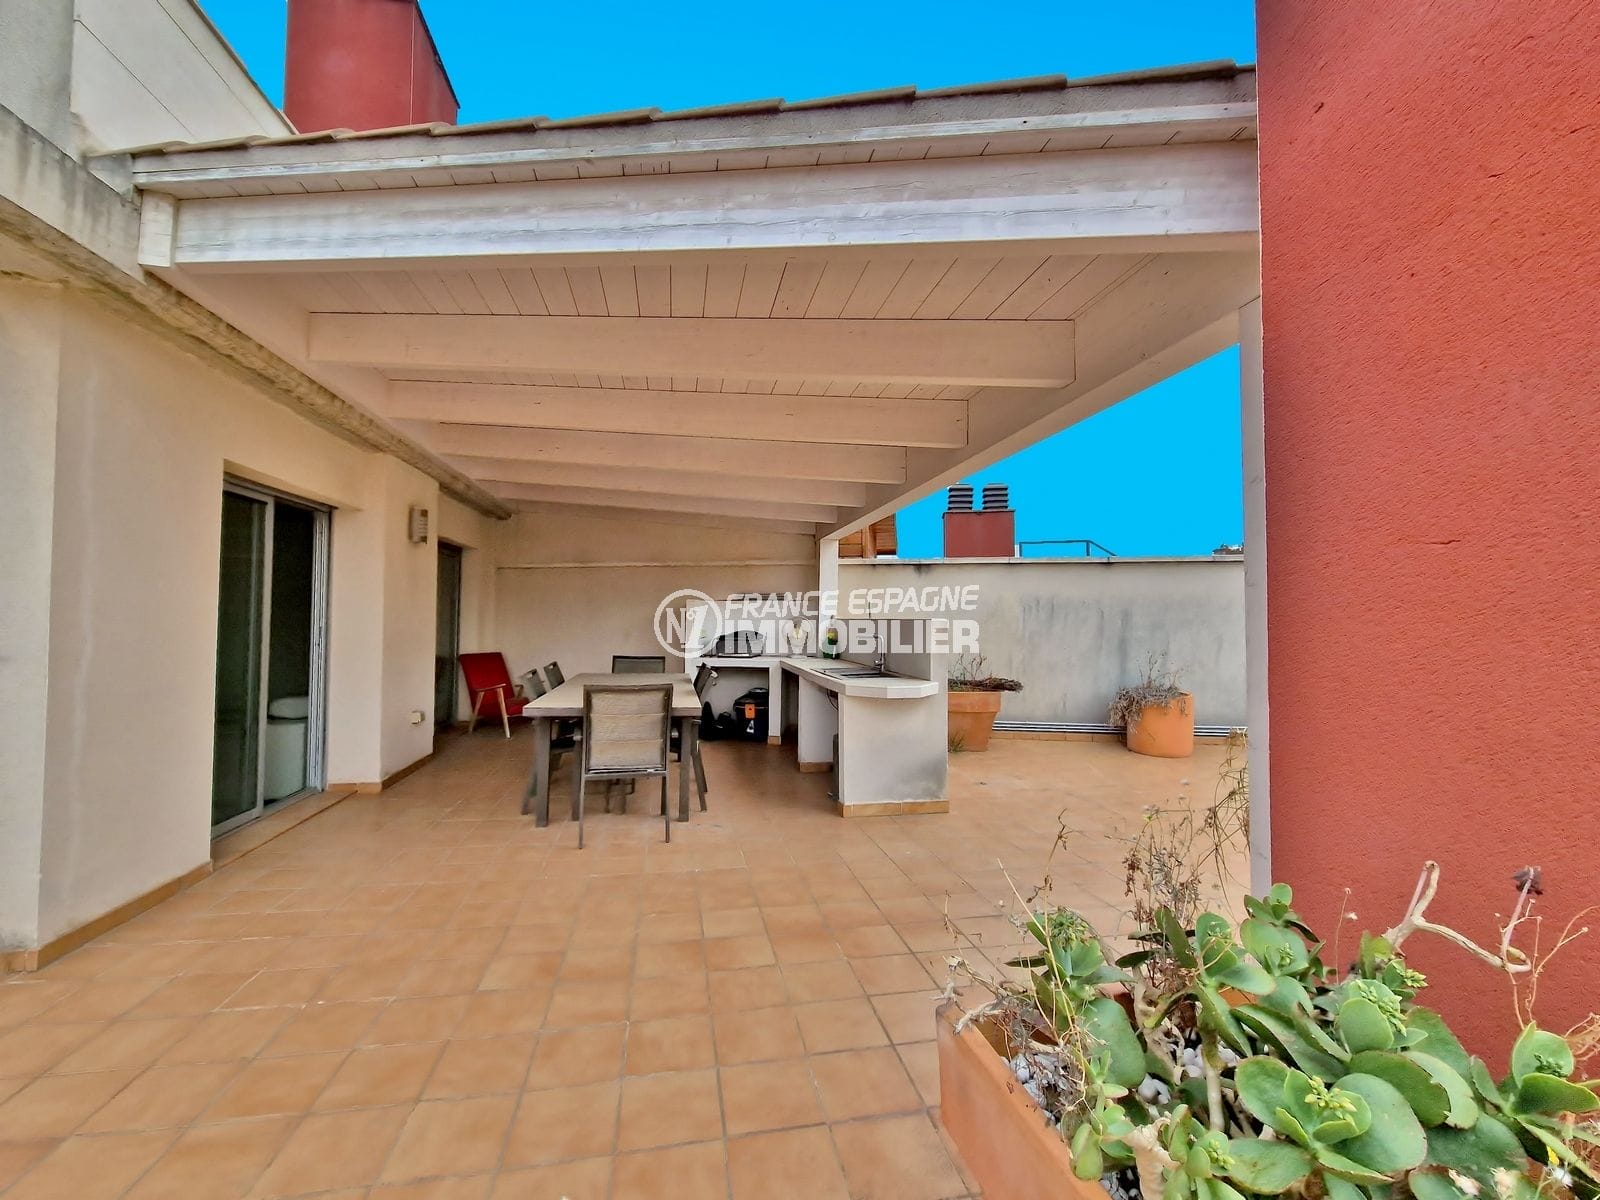 Figueres – terrassa àtic solàrium 175 m², aparcament privat al soterrani